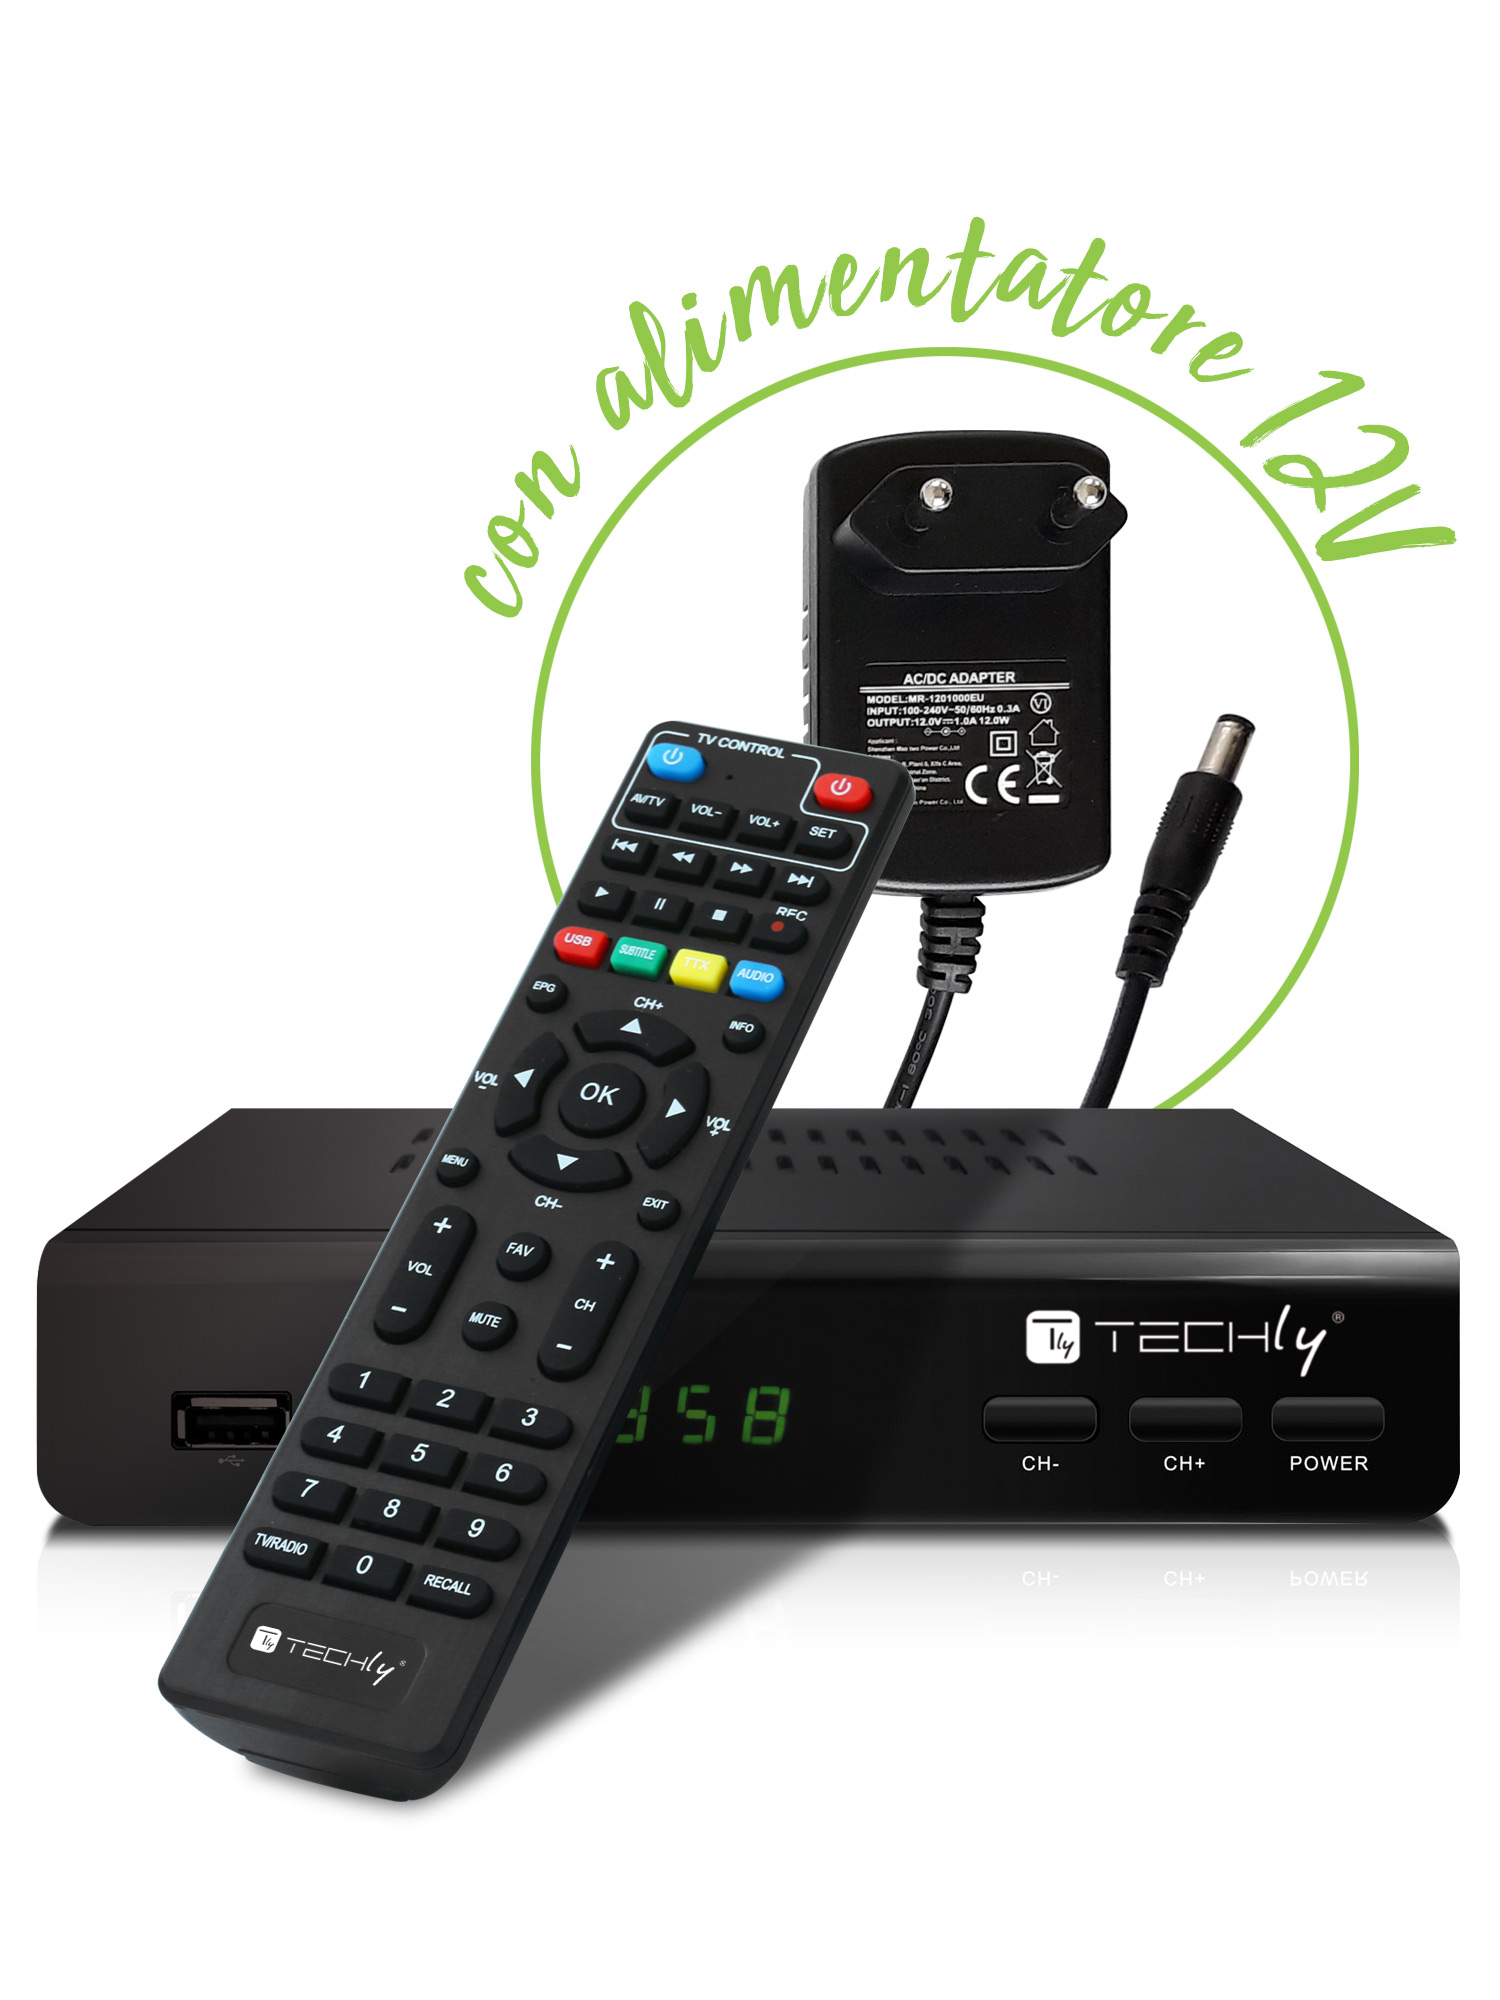 TV DV Androidi Box convertitore Digitale Telecomando per PVR Time Shift Aggiornamento Software Riproduzione File multimediali Suchinm Decoder DVB-T//T2